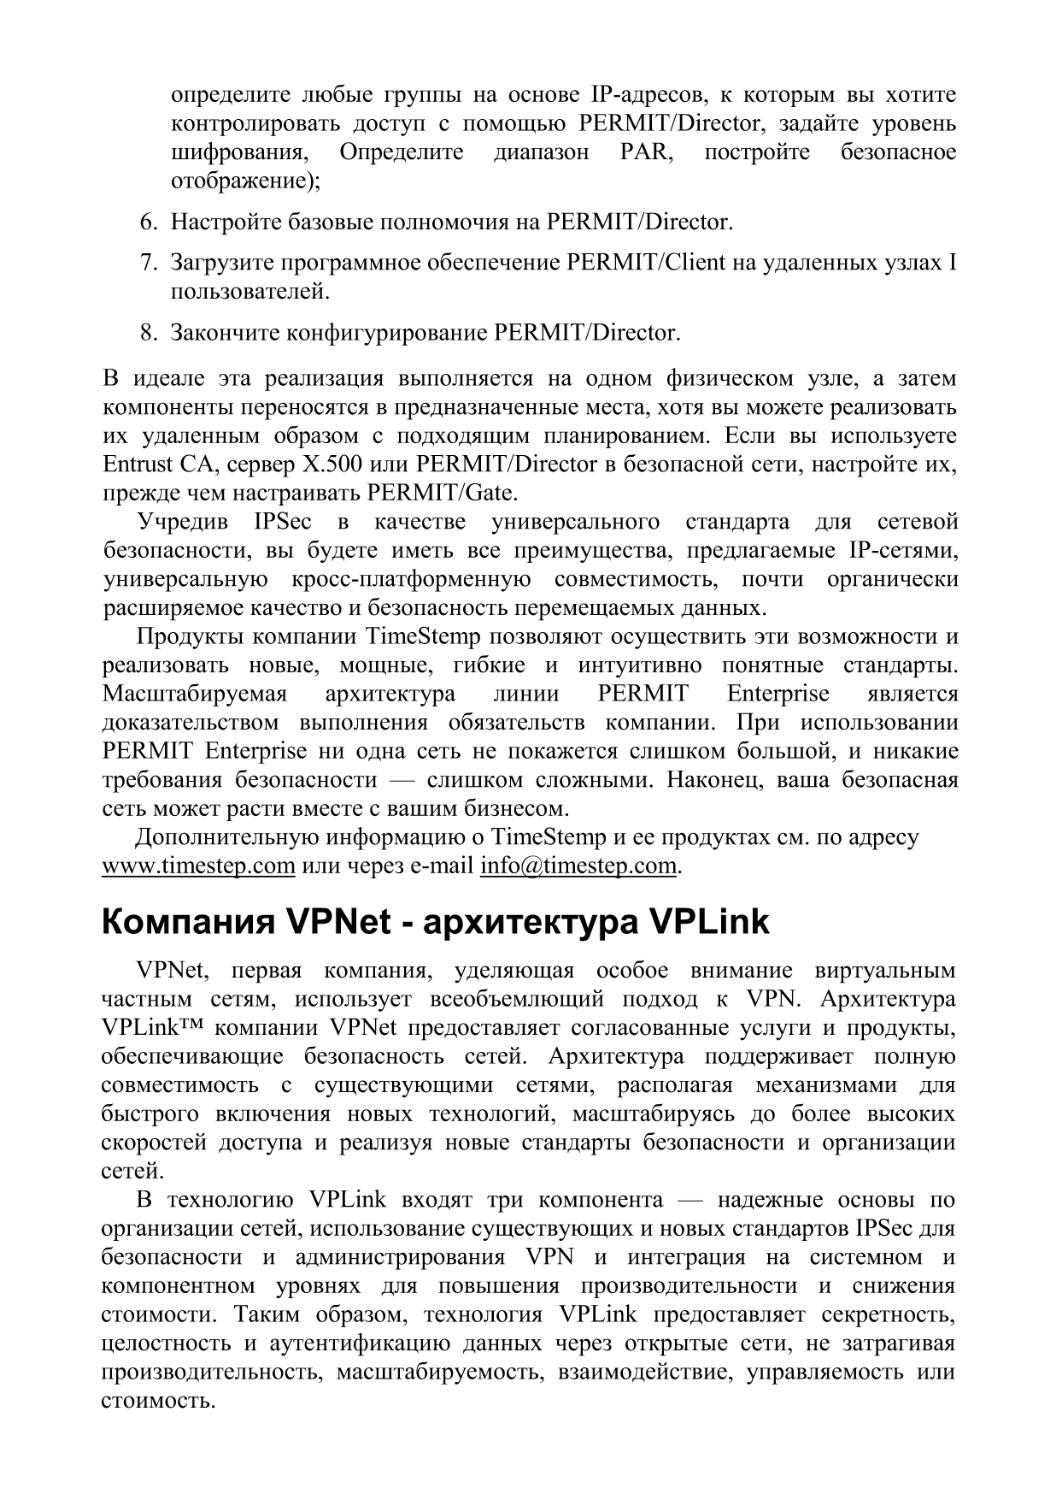 Компания VPNet - архитектура VPLink